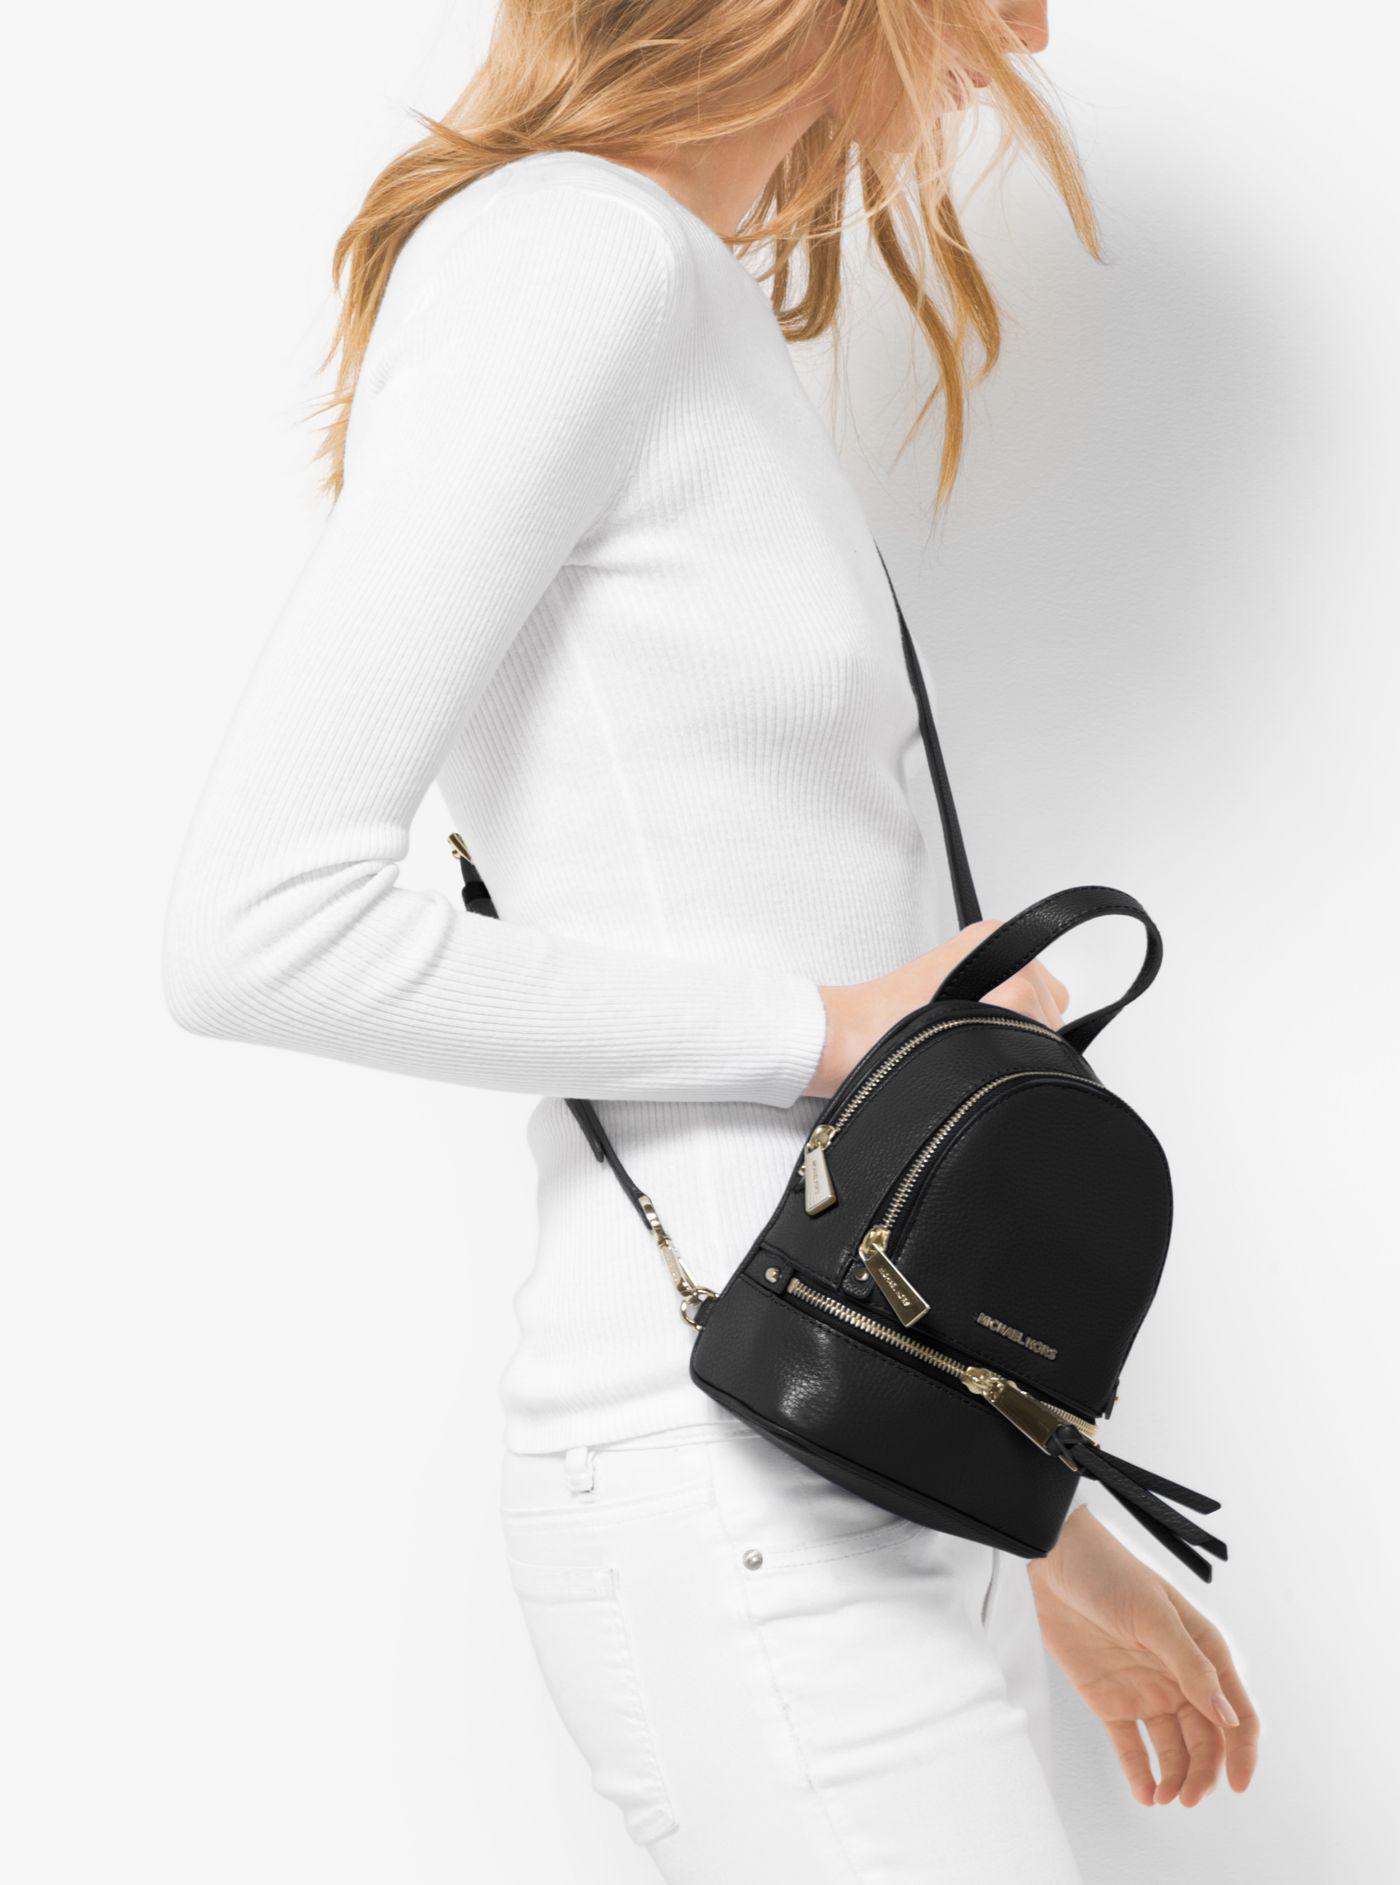 Michael Kors Rhea Mini Leather Backpack in Black | Lyst